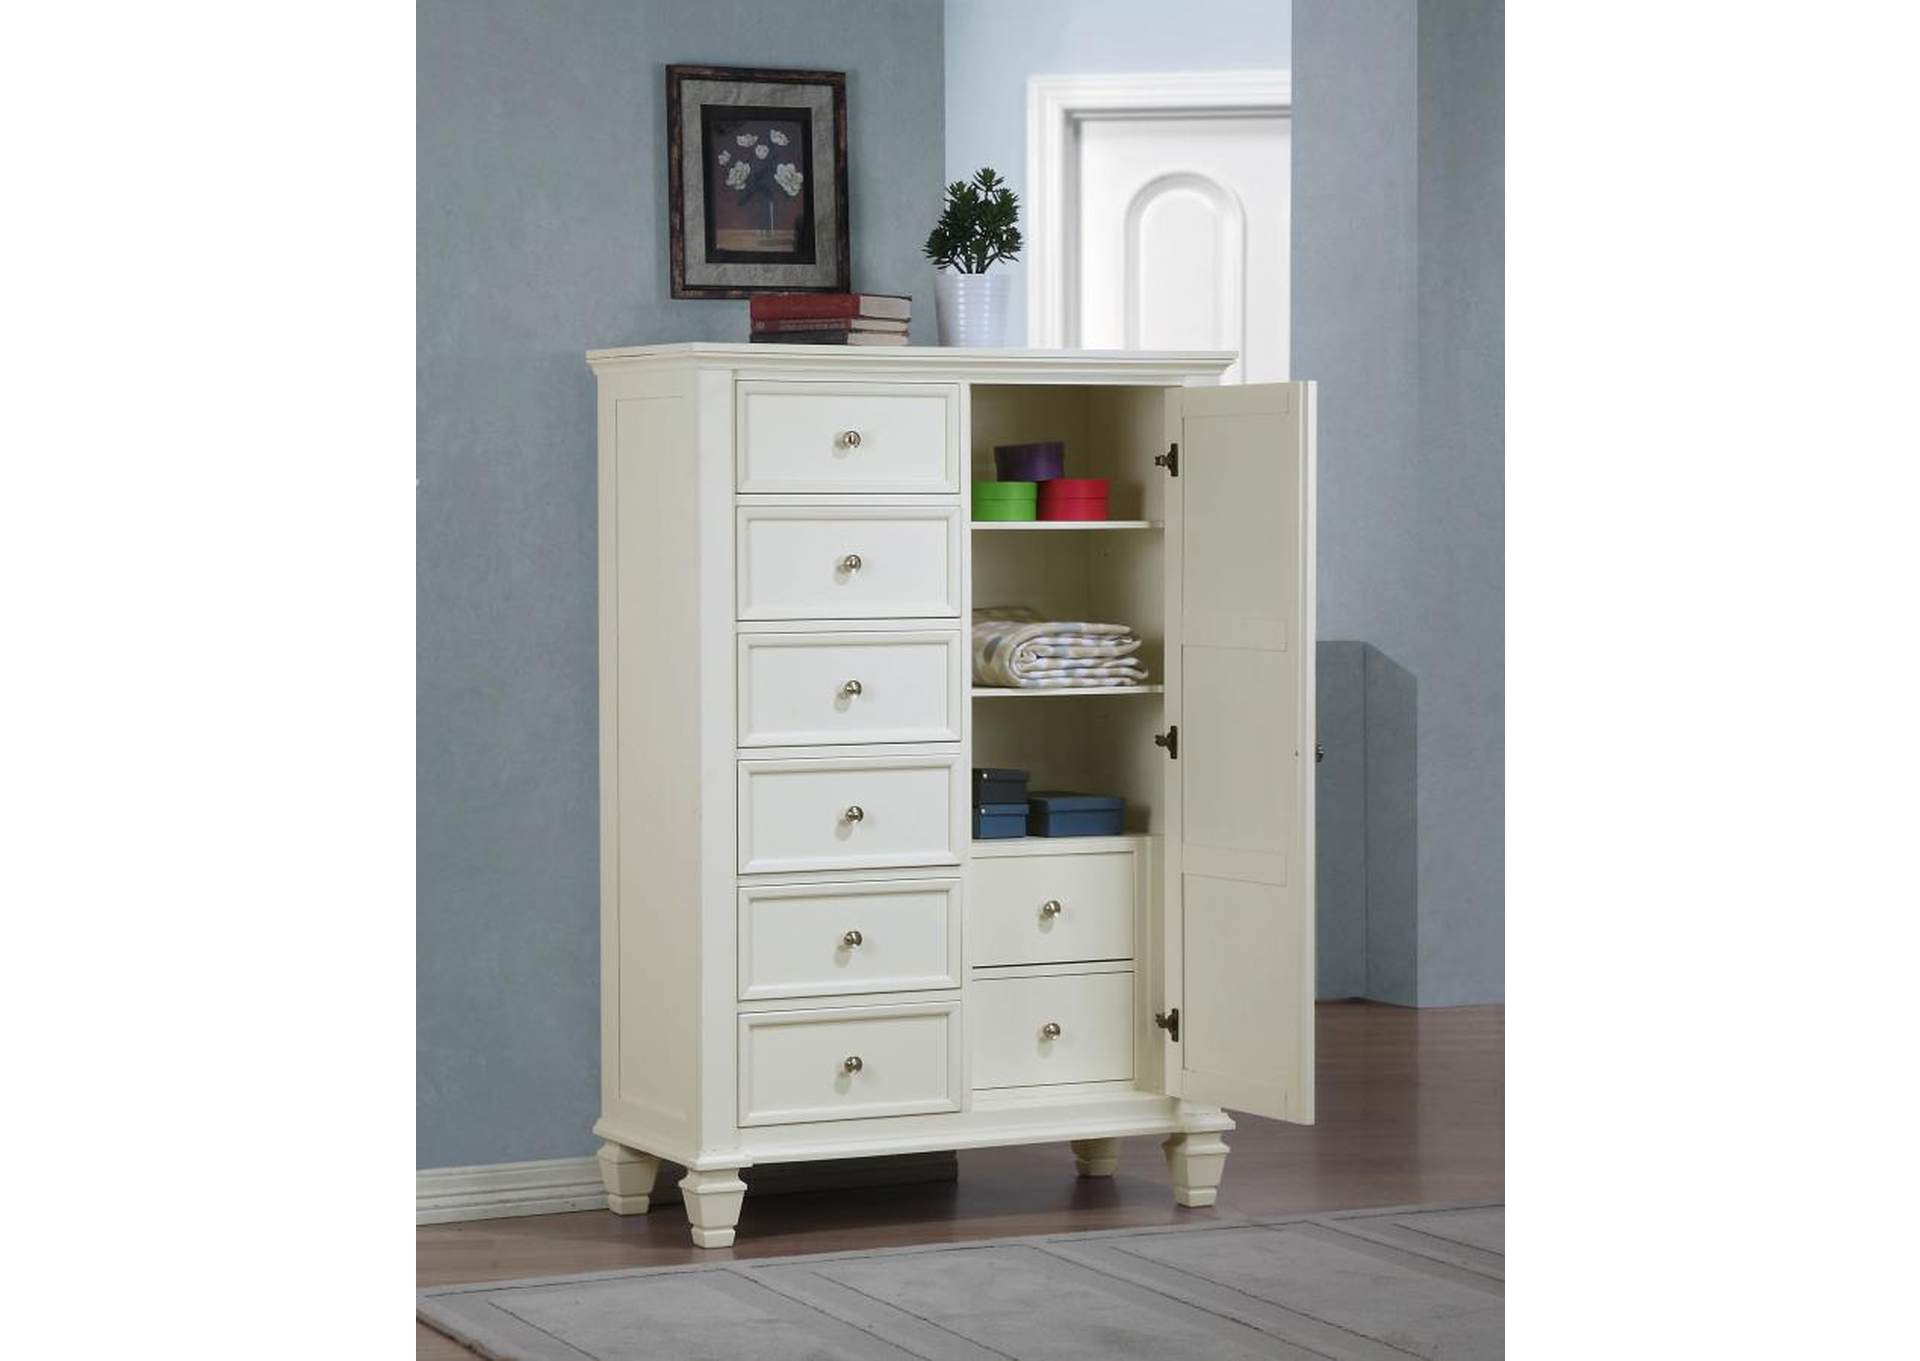 Sandy Beach 8 - drawer Man's Chest Storage White,Coaster Furniture